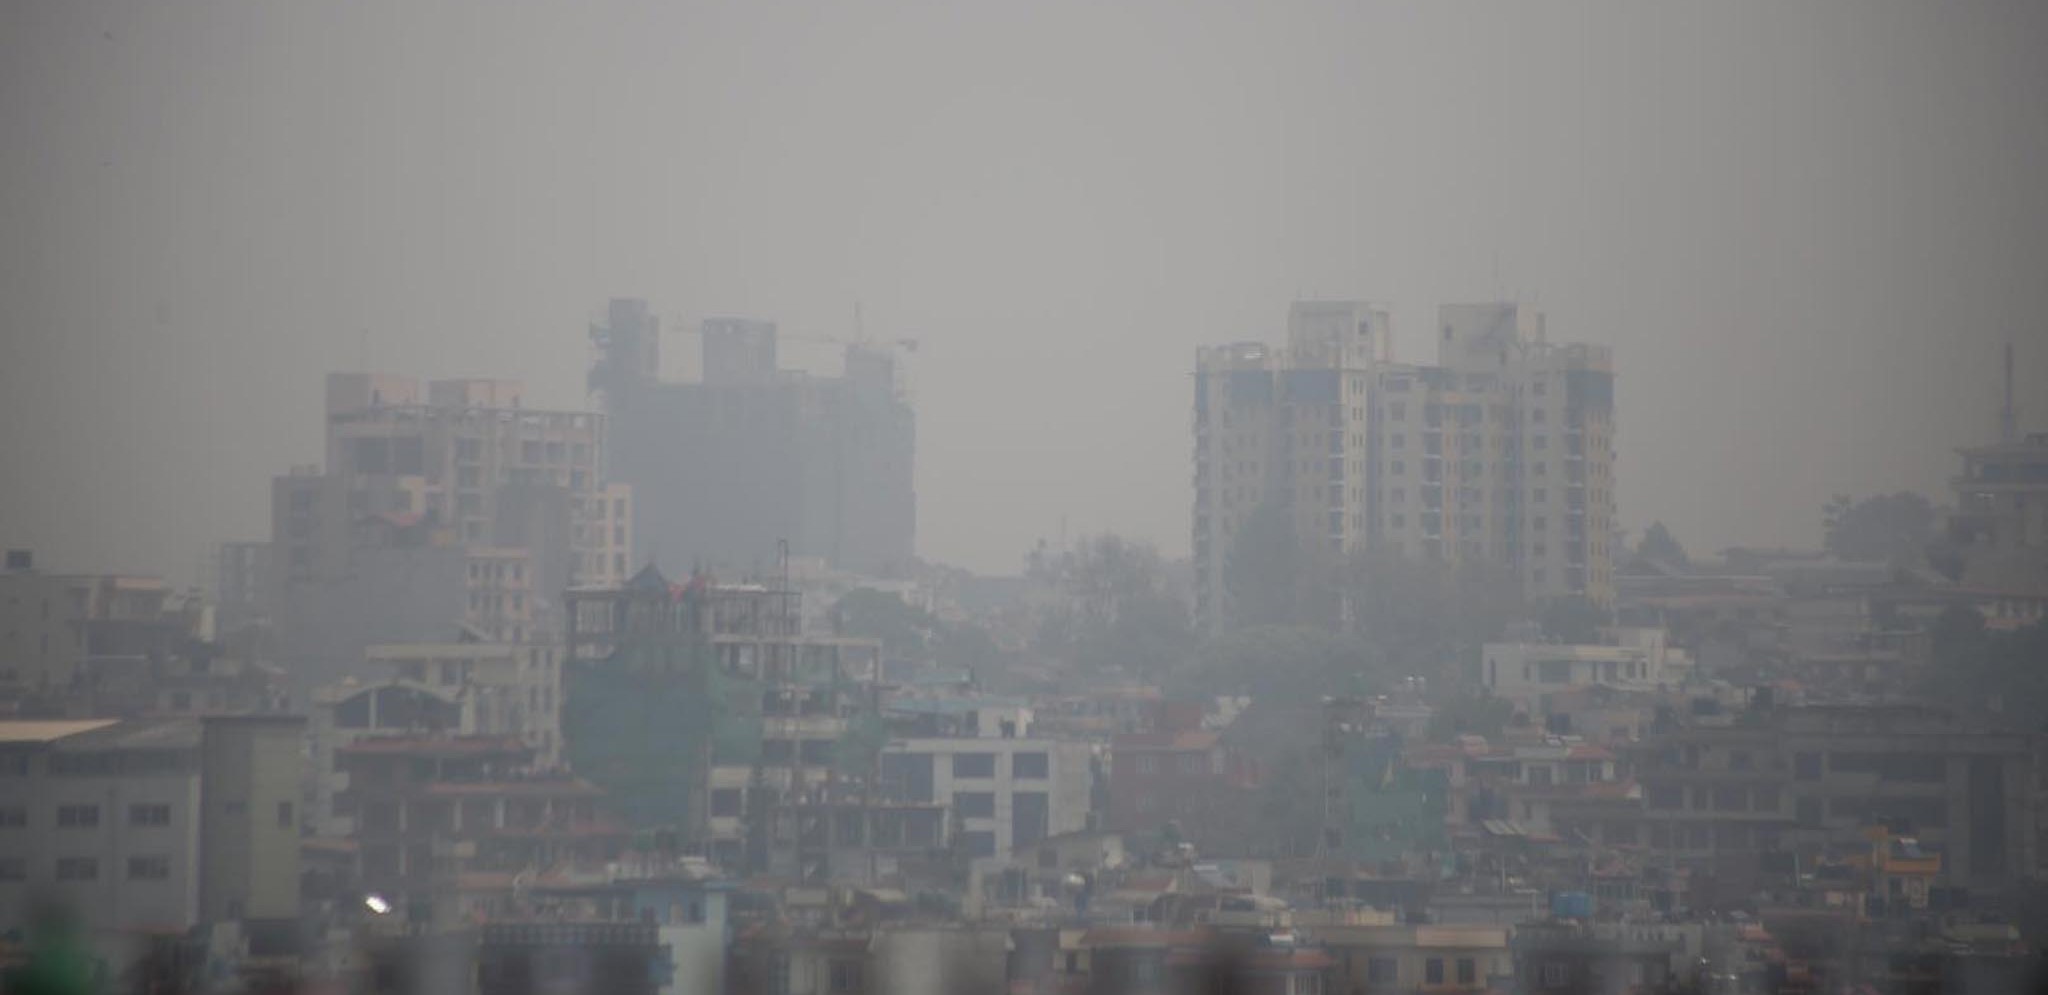 अझै घटेन काठमाडौं उपत्यकाको वायु प्रदूषण